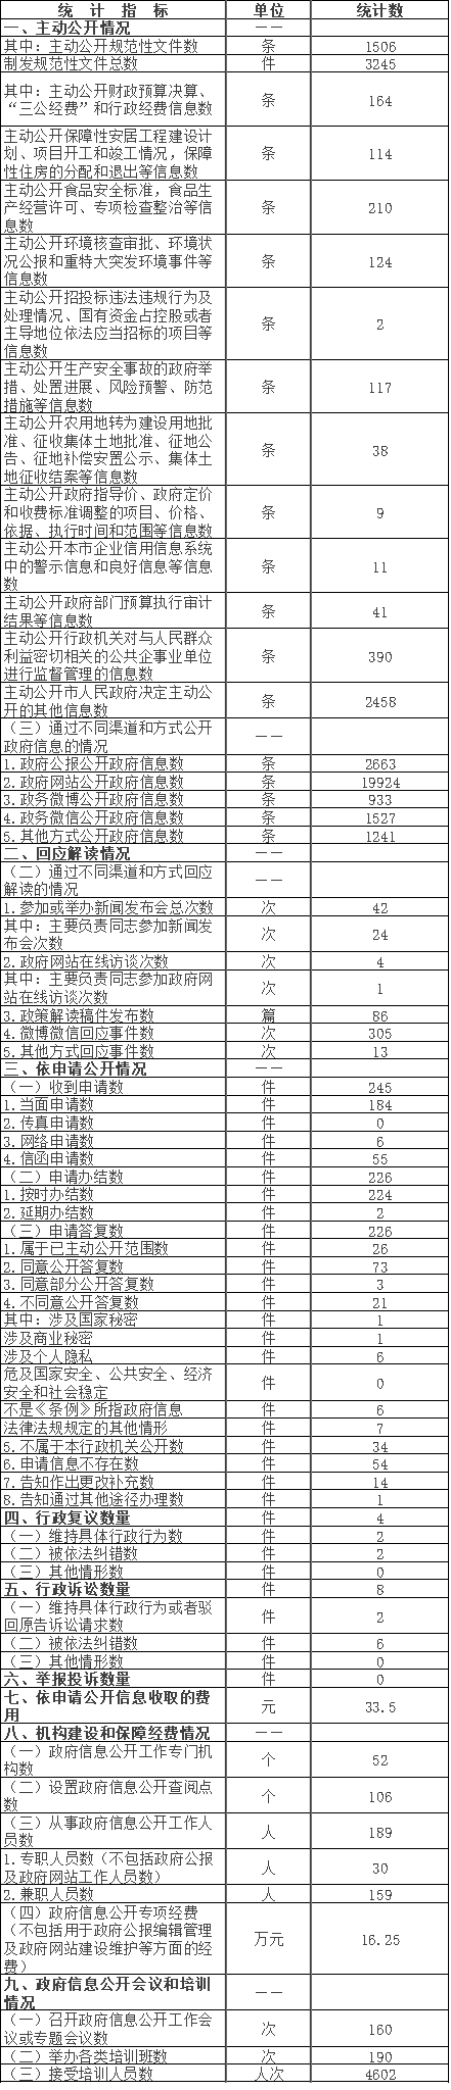 北京市平谷區政府信息公開情況統計表(2016年度)